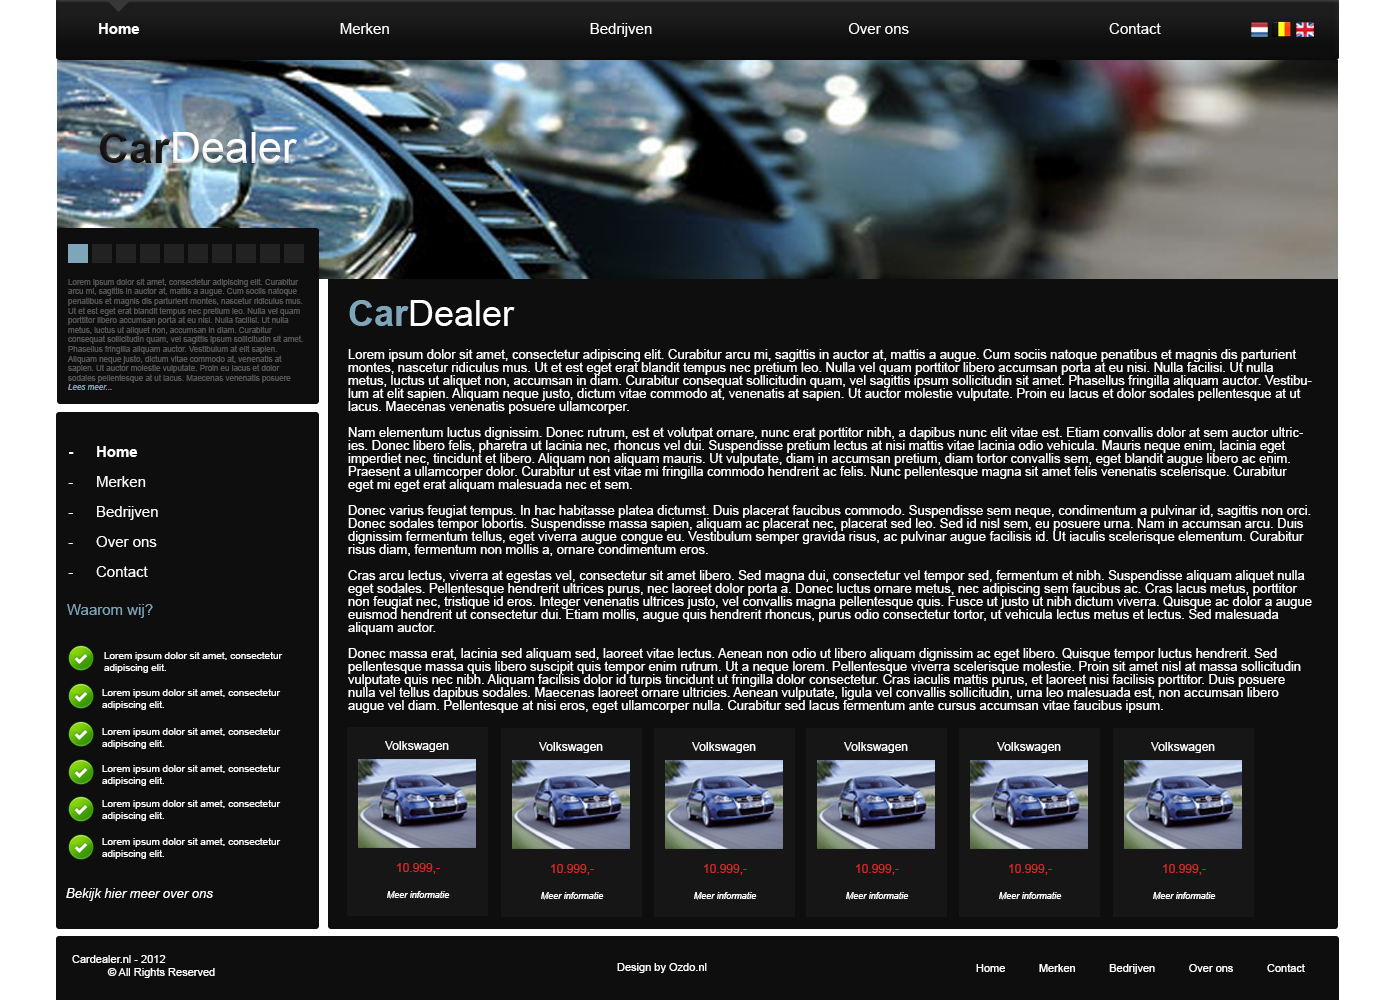 CarDealer Layout-cardealer-png